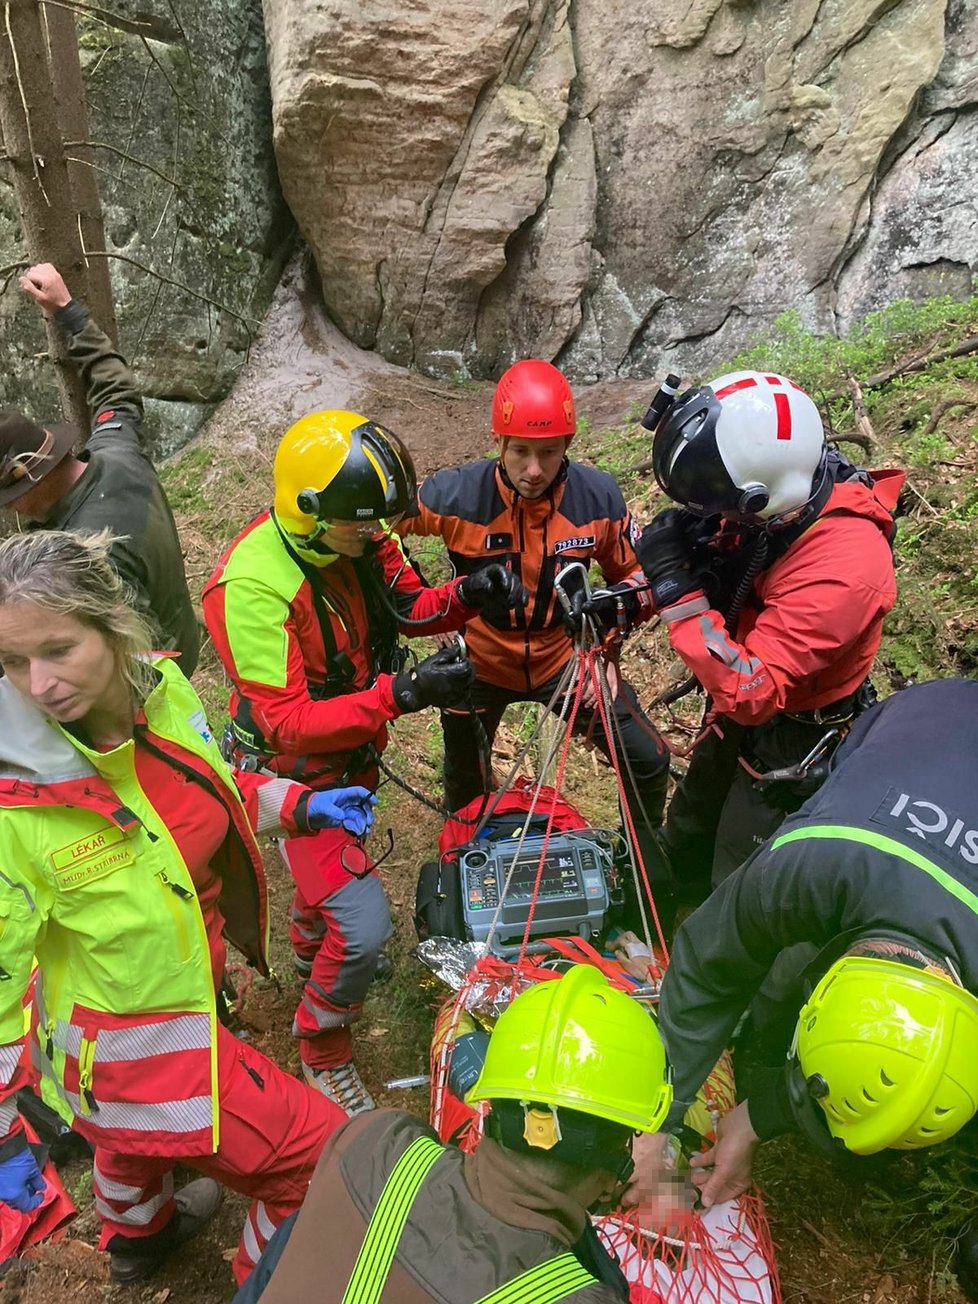 Záchrana horolezců v Adršpašských skalách